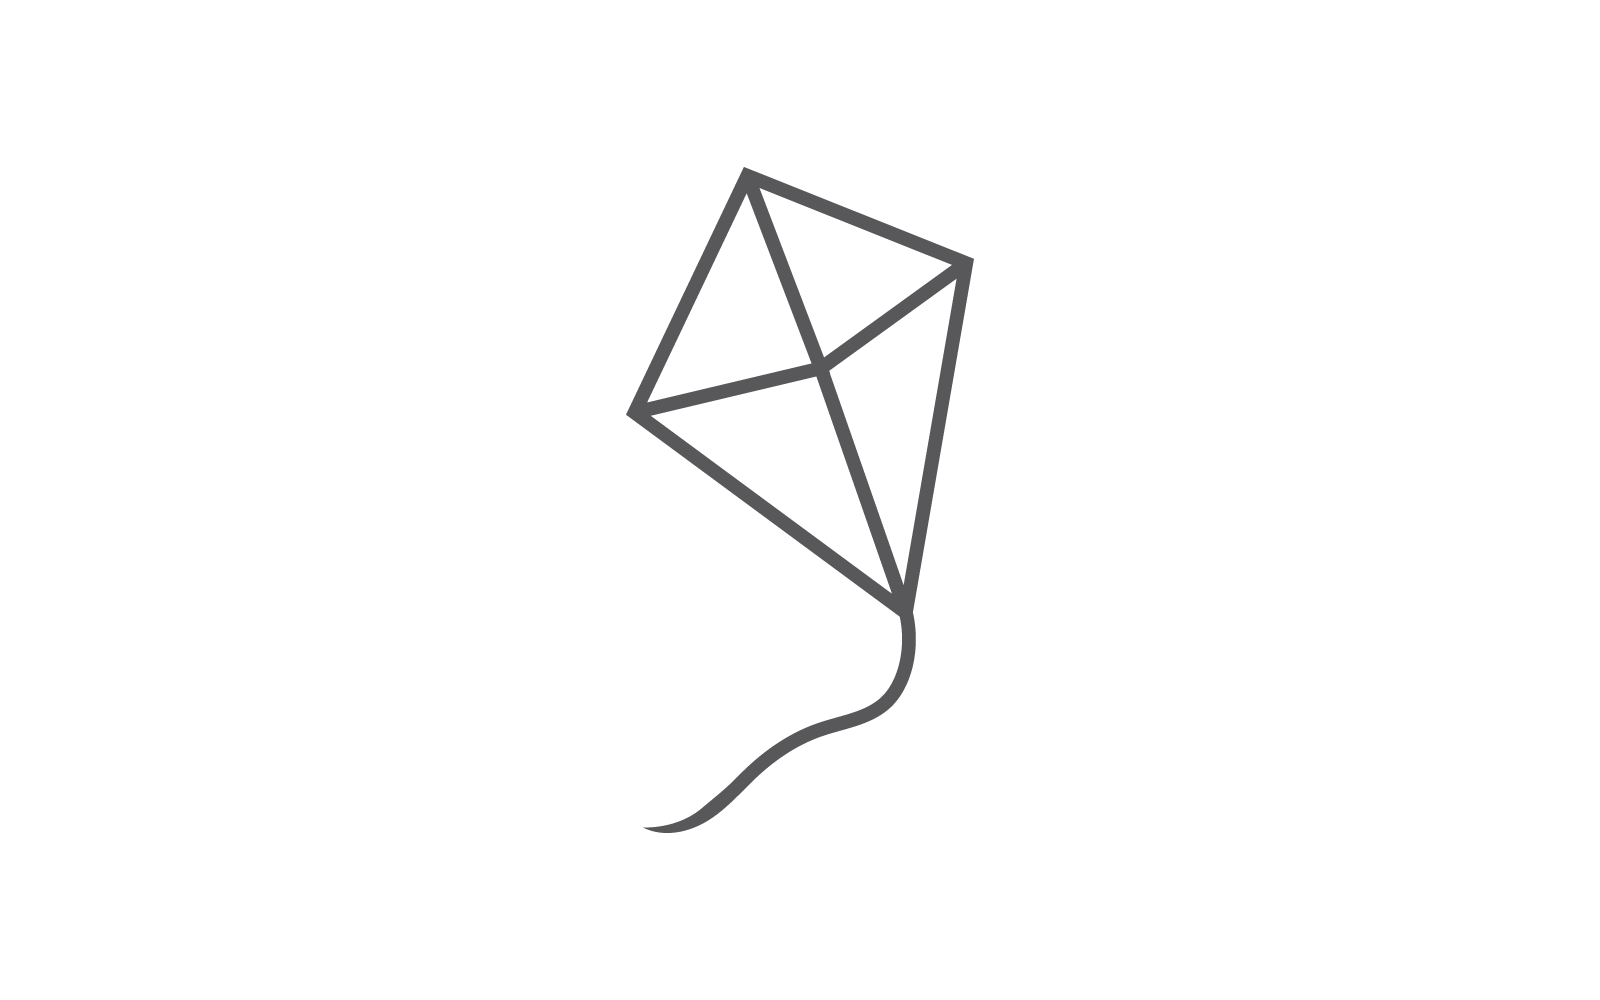 Kite illustration logo vector design